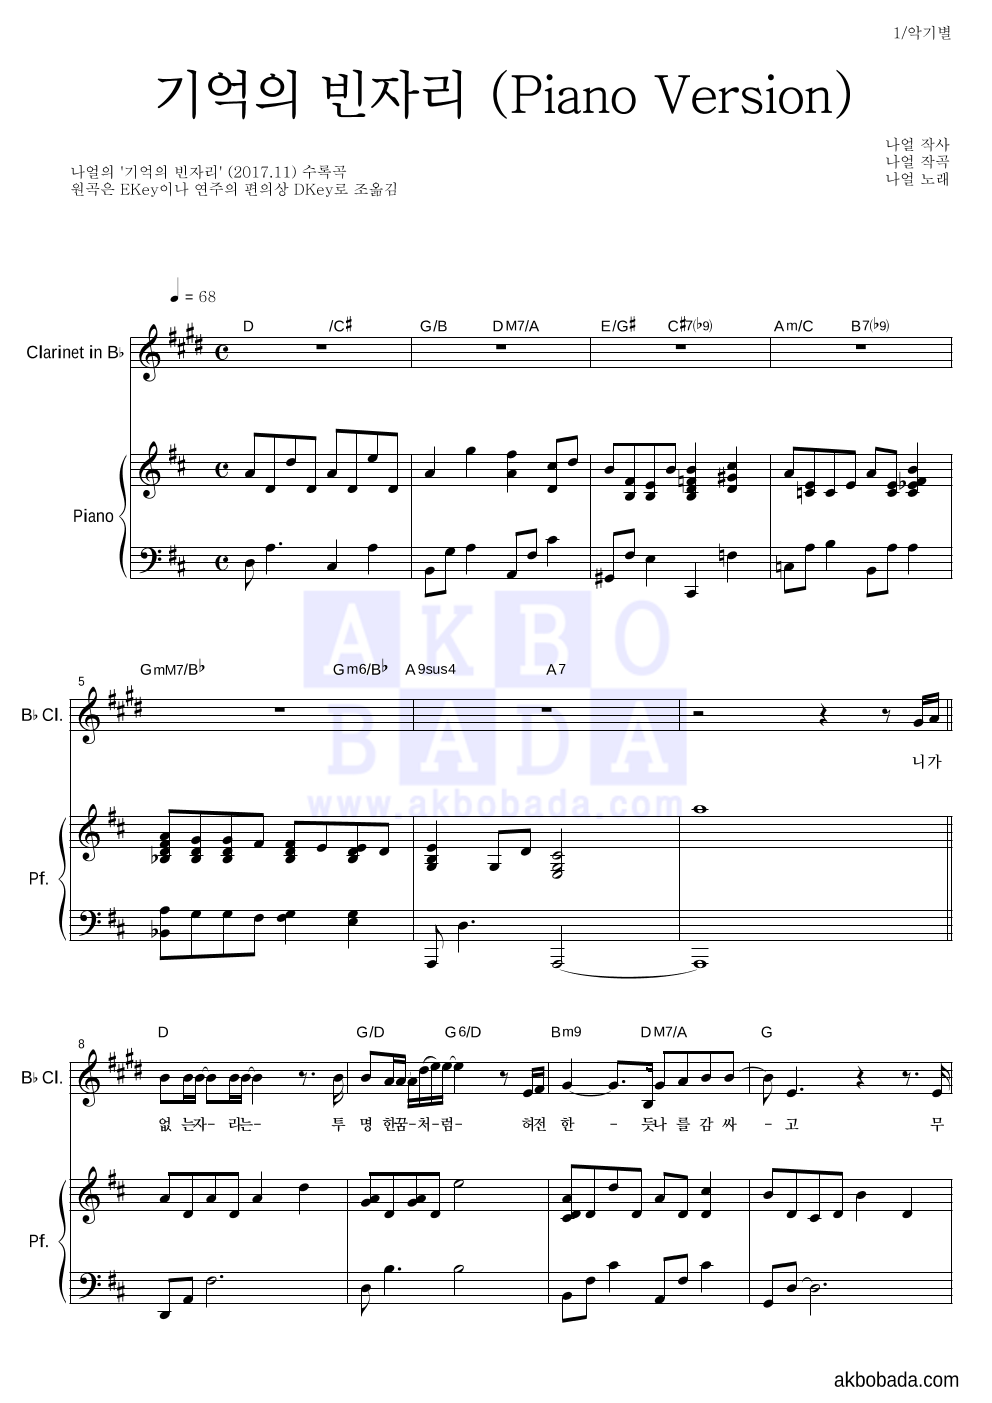 나얼 - 기억의 빈자리 (Piano Version) 클라리넷&피아노 악보 